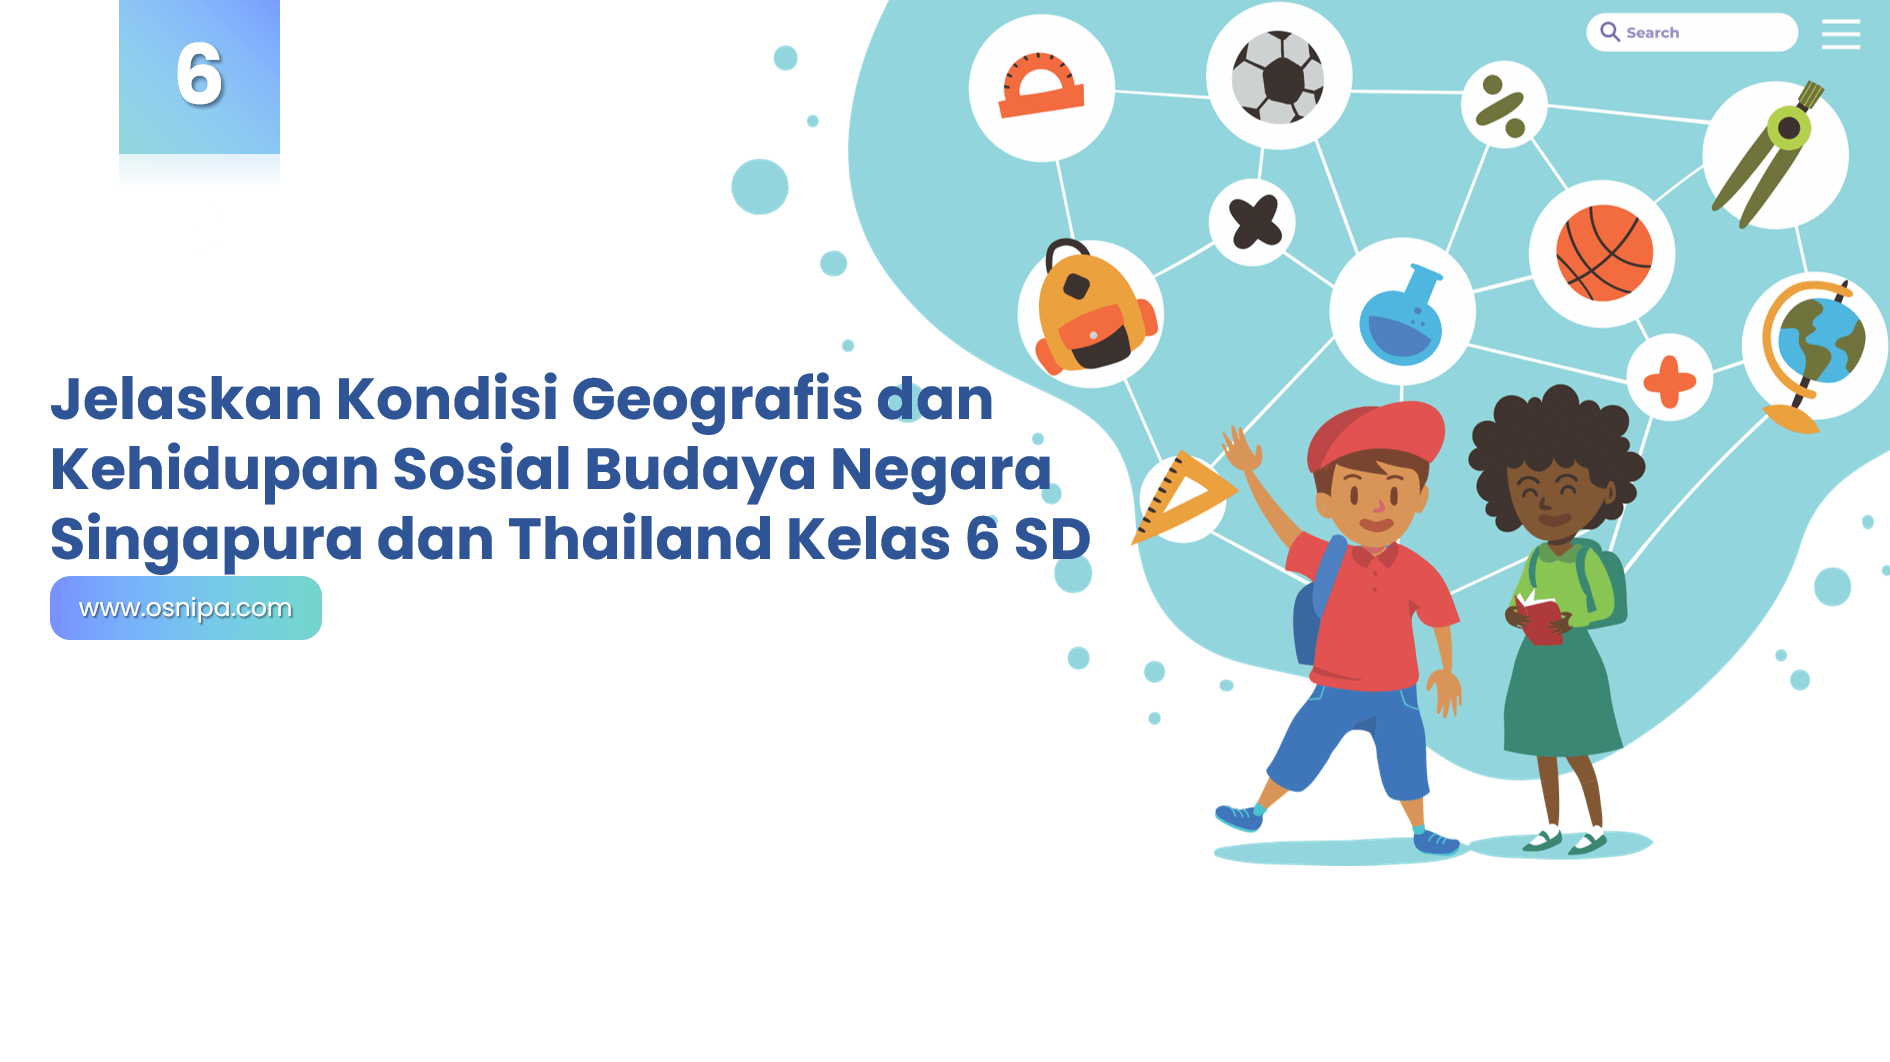 Jelaskan Kondisi Geografis dan Kehidupan Sosial Budaya Negara Singapura dan Thailand Kelas 6 SD